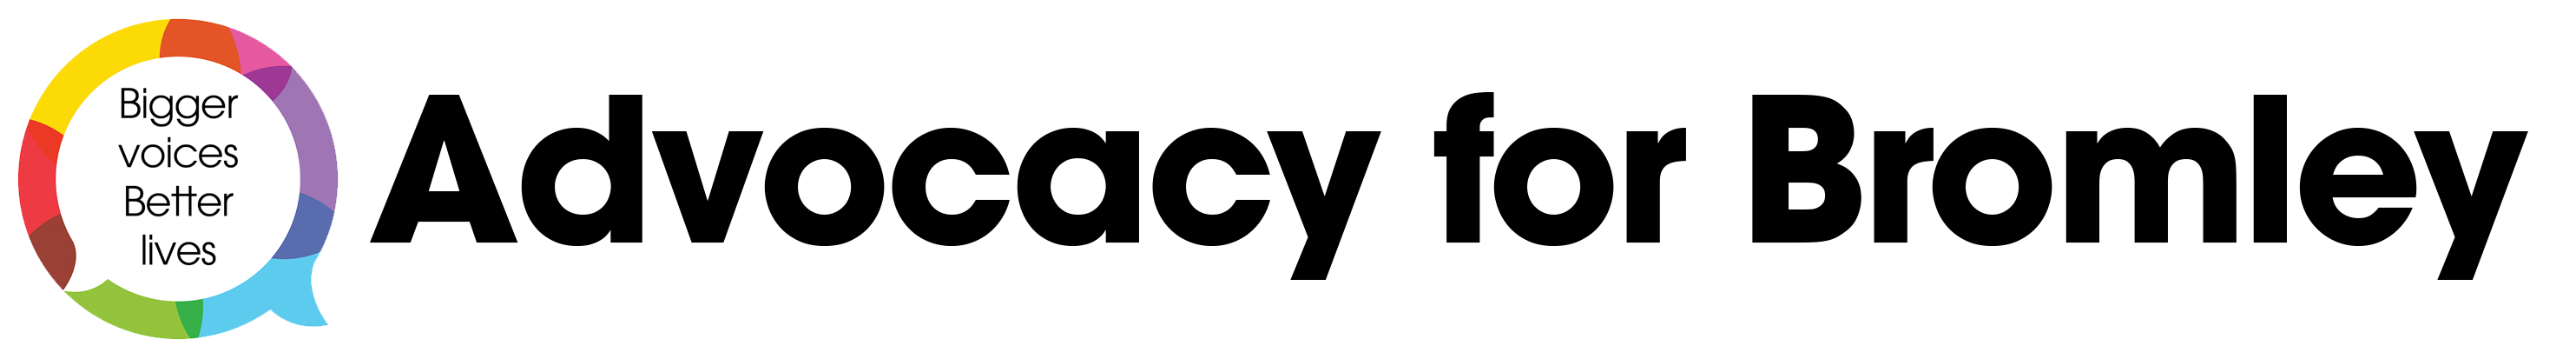 Advocacy For Bromley Logo